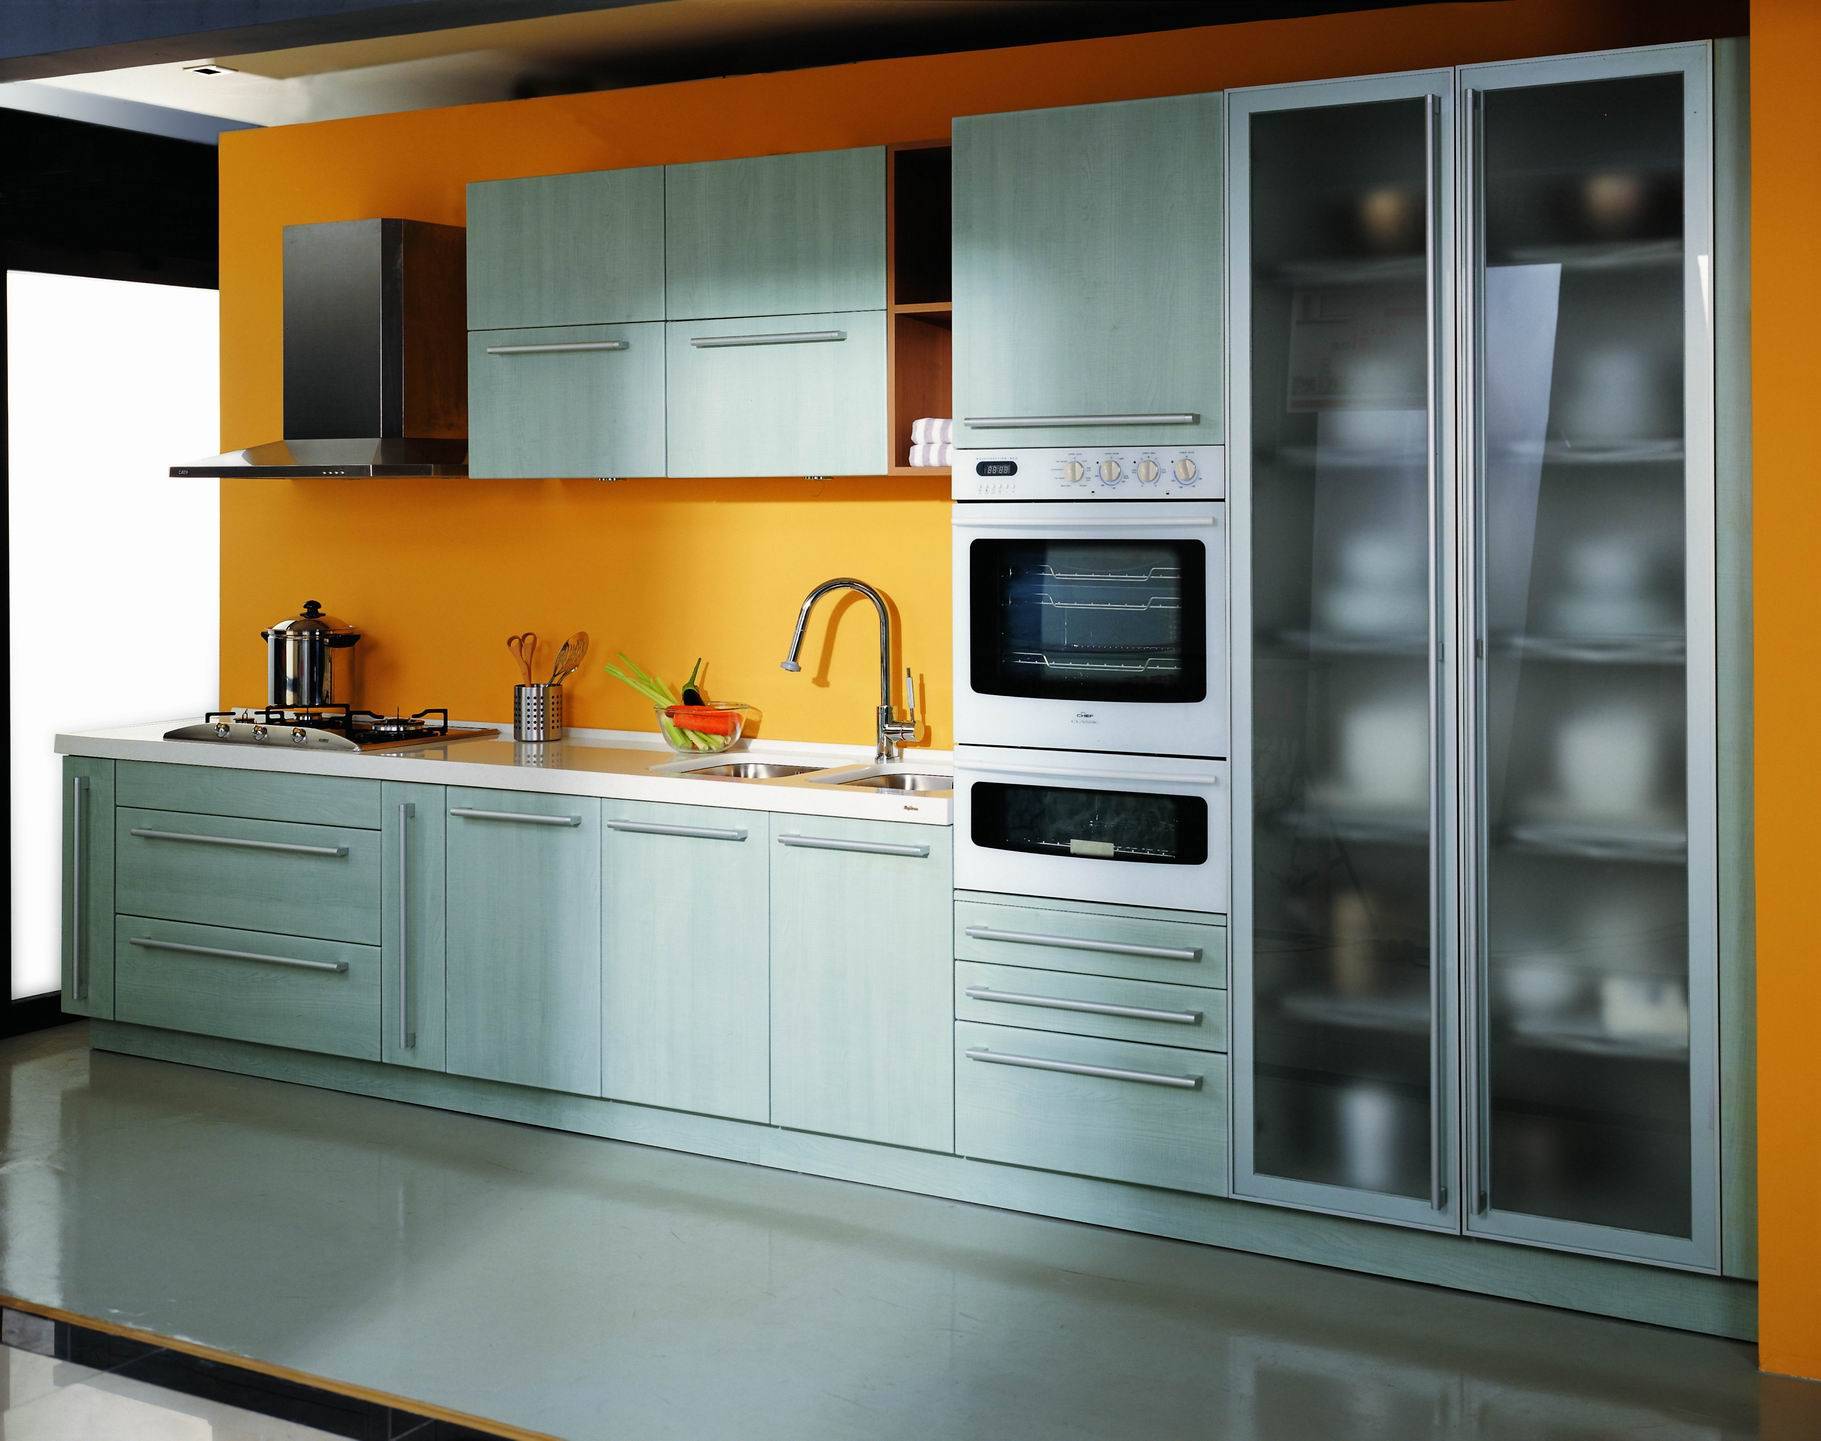 Цвет фасада кухни — как выбрать удачный вариант? (+70 фото)